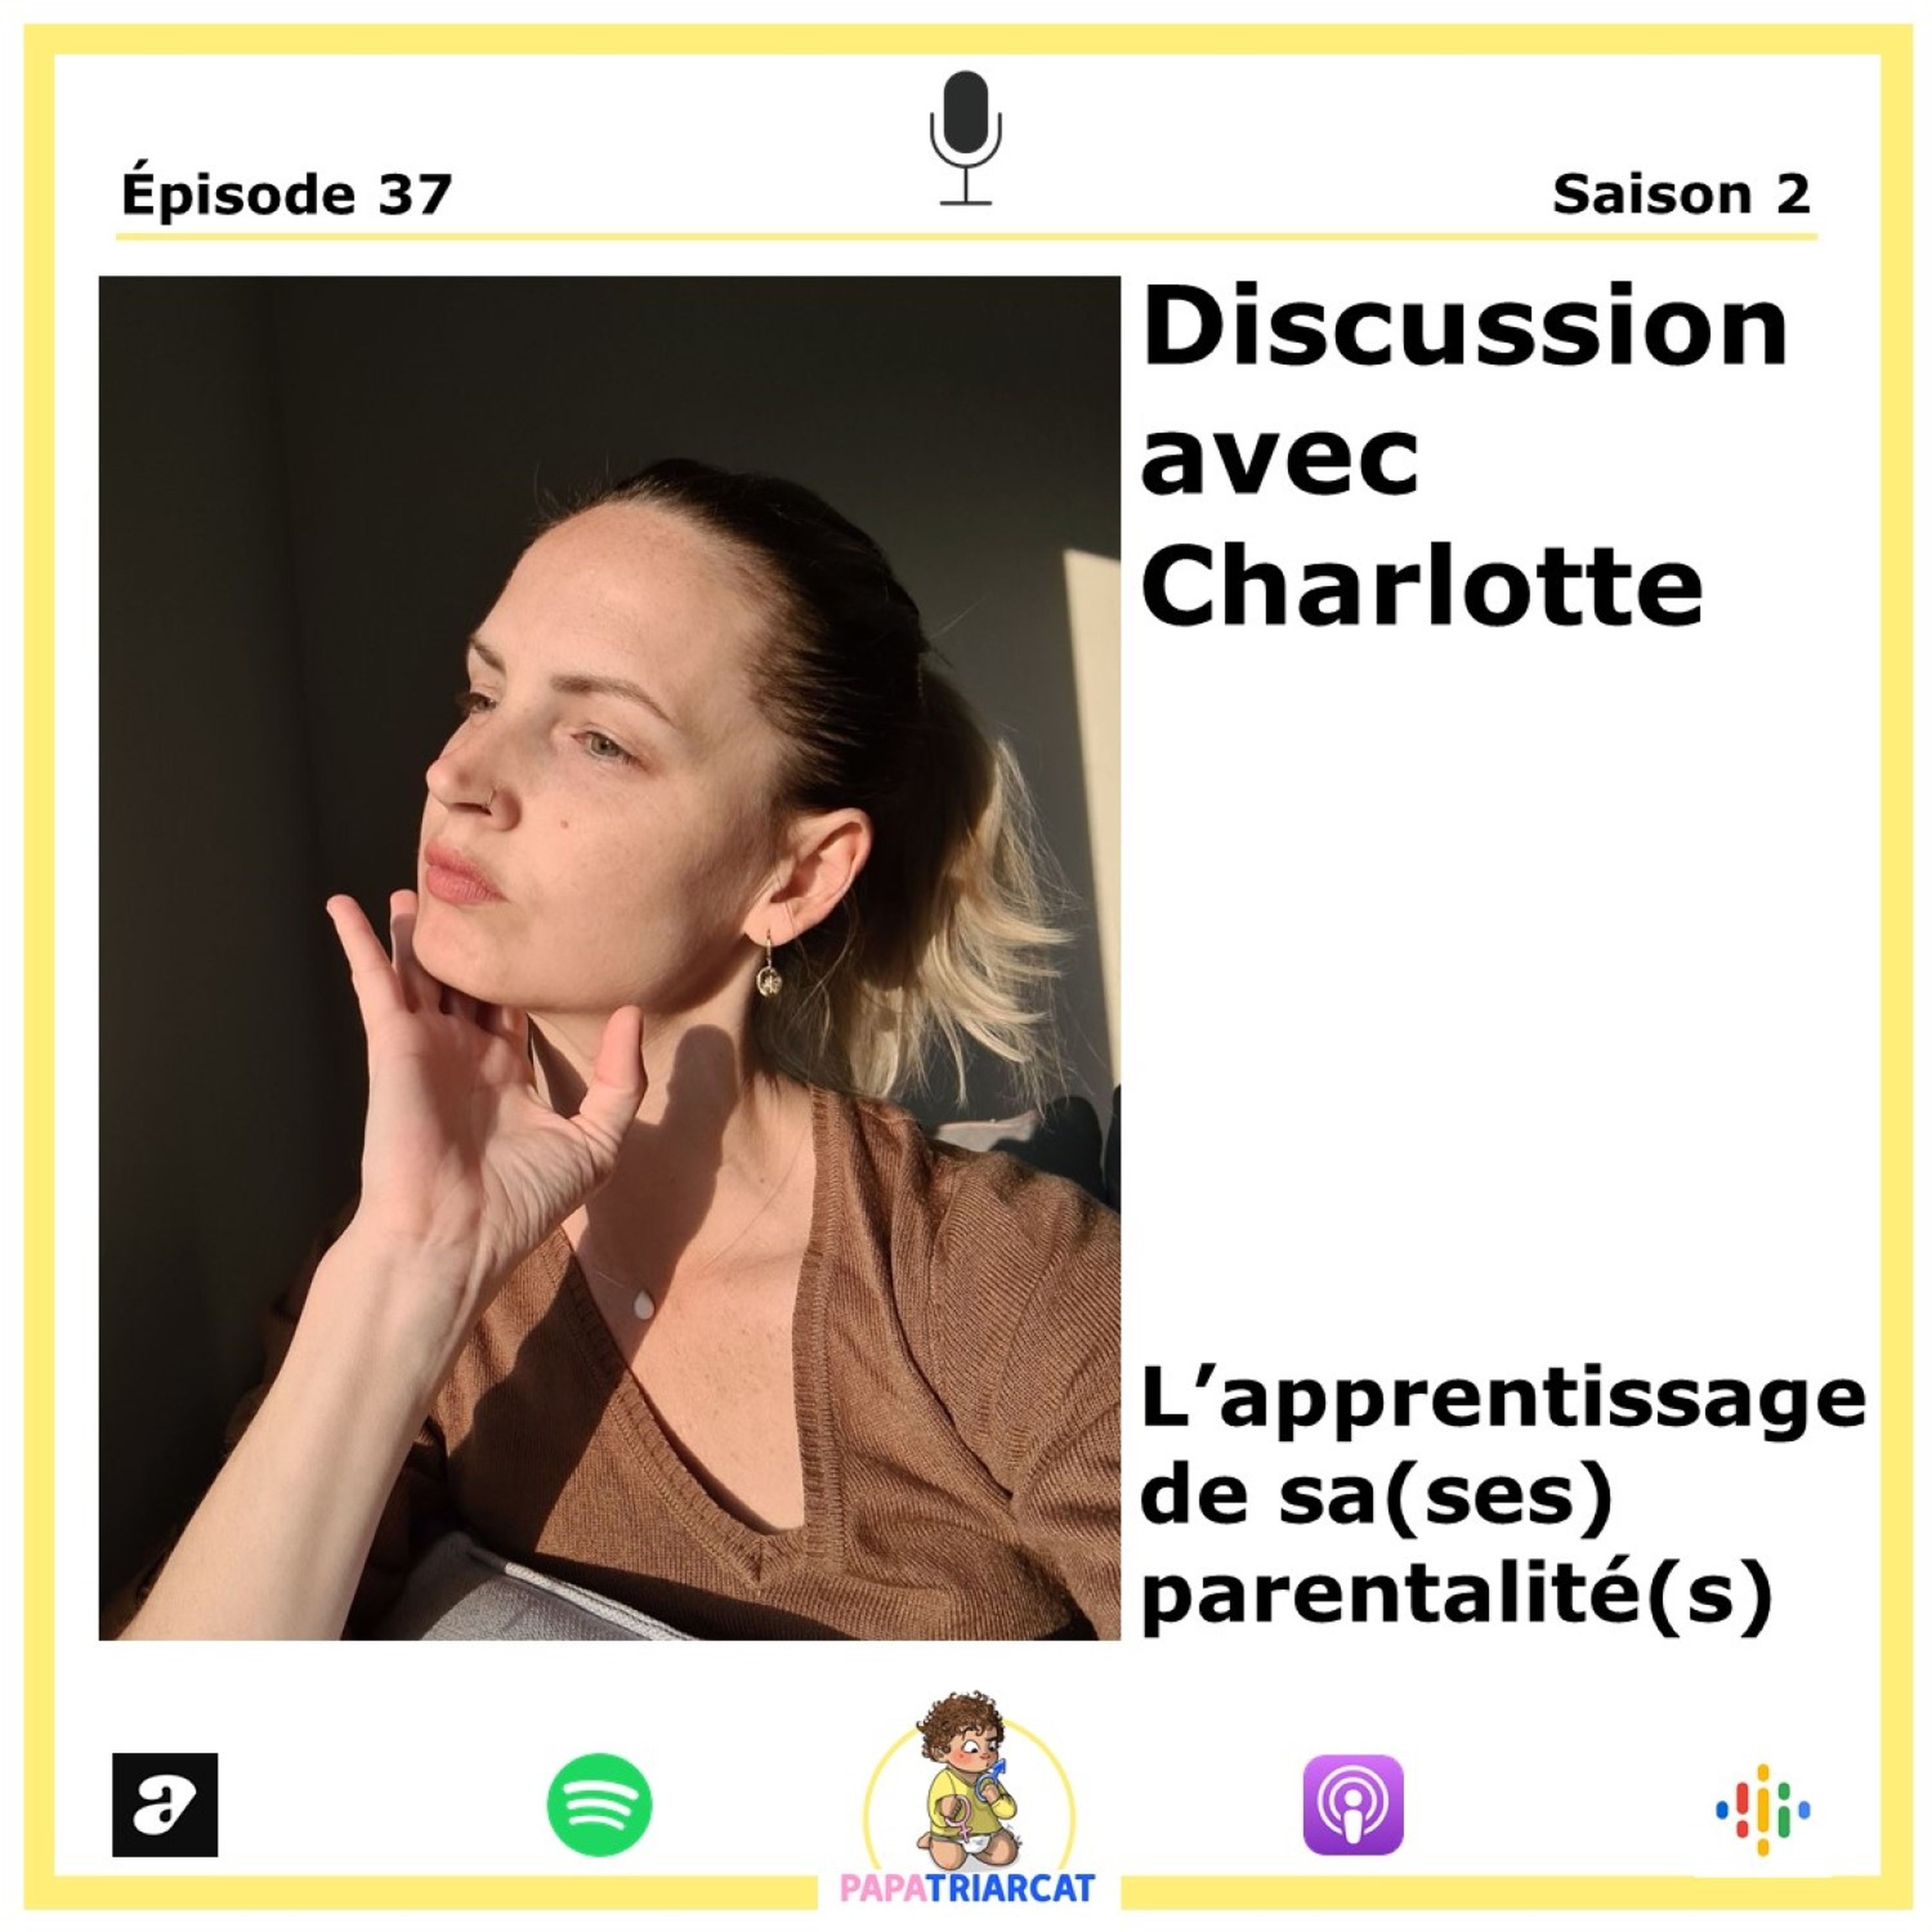 #37 - L'apprentissage de sa (ses) parentalité(s) - Discussion avec Charlotte